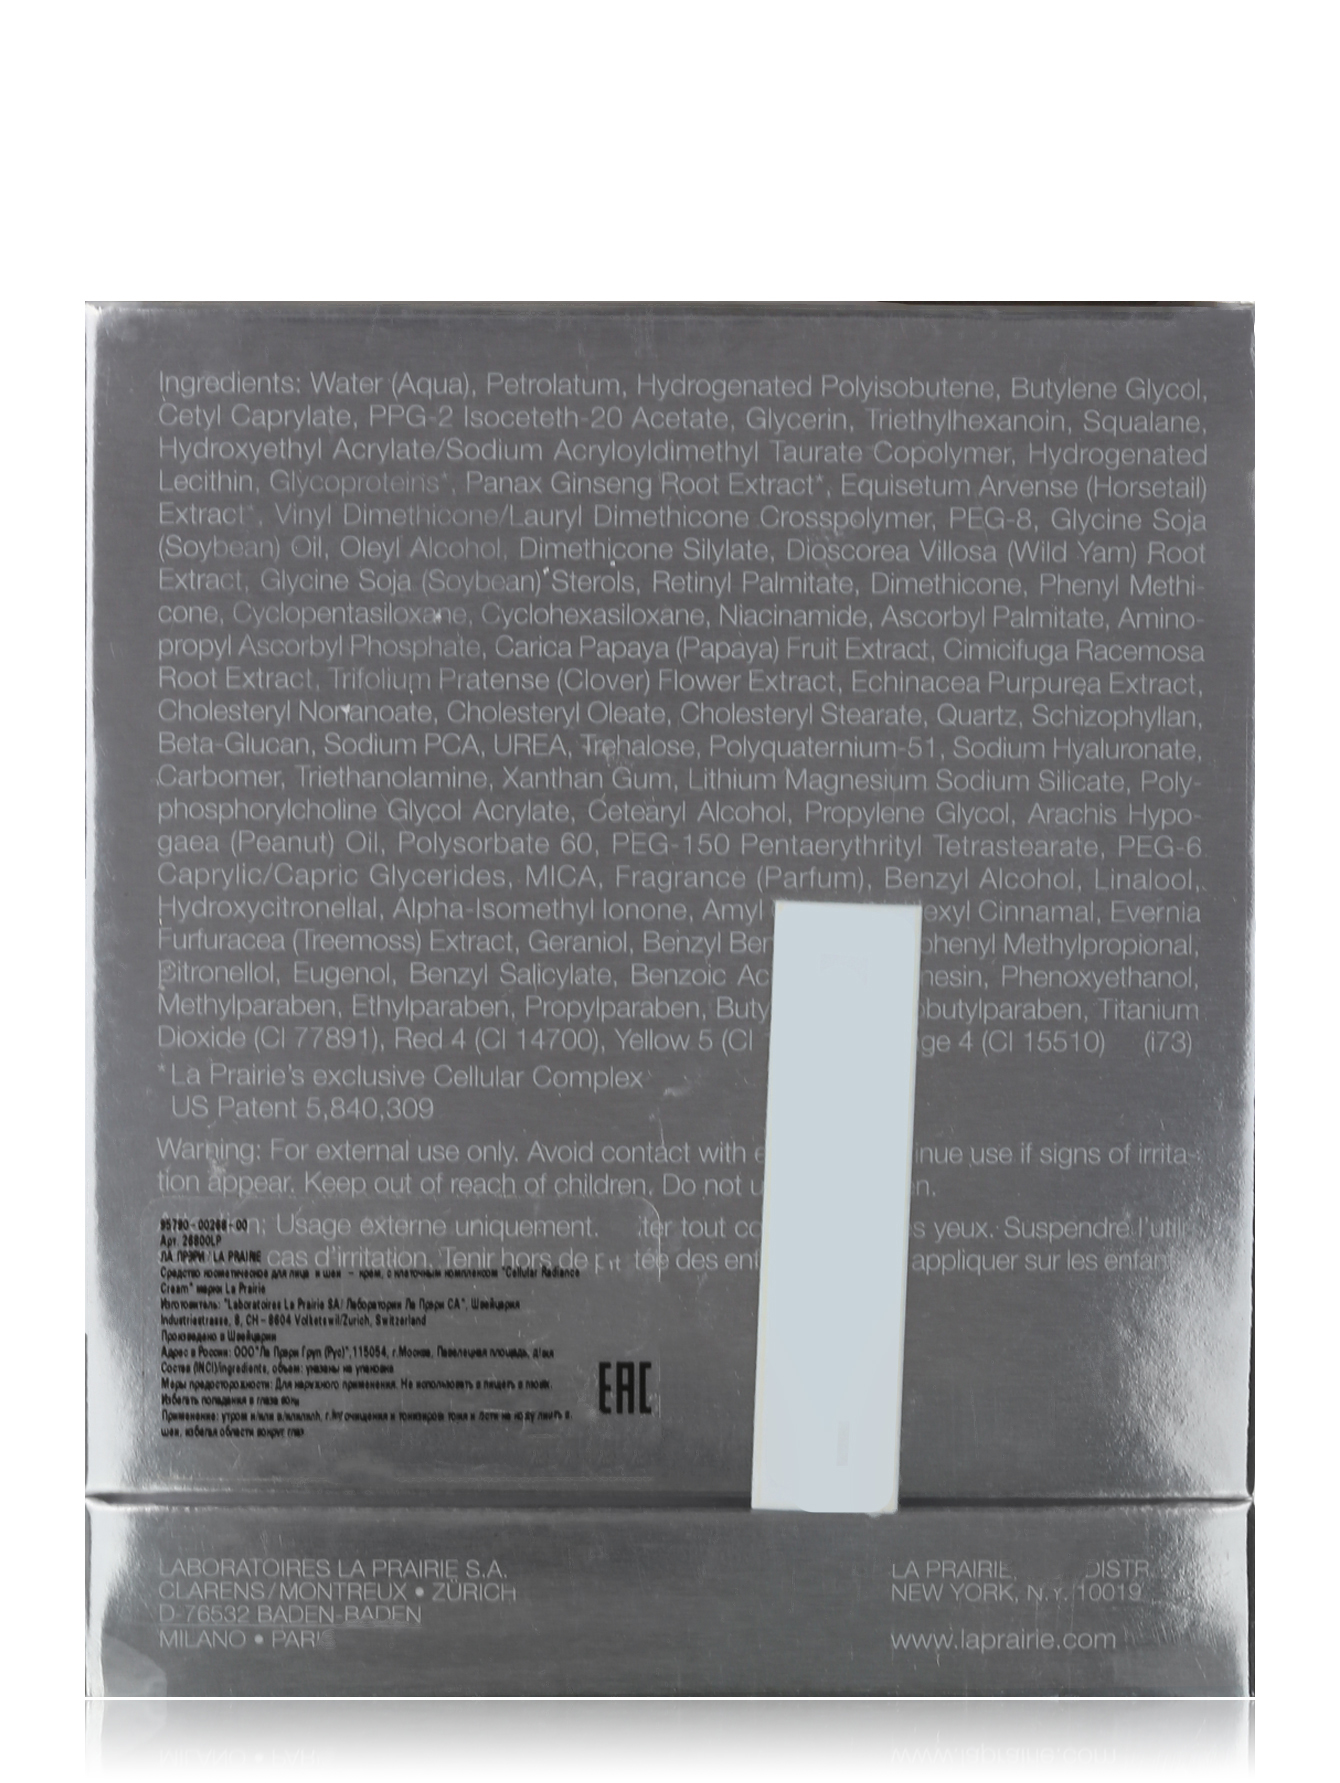 Крем придающий коже сияние - The Radiance Collection, 50ml - Модель Верх-Низ